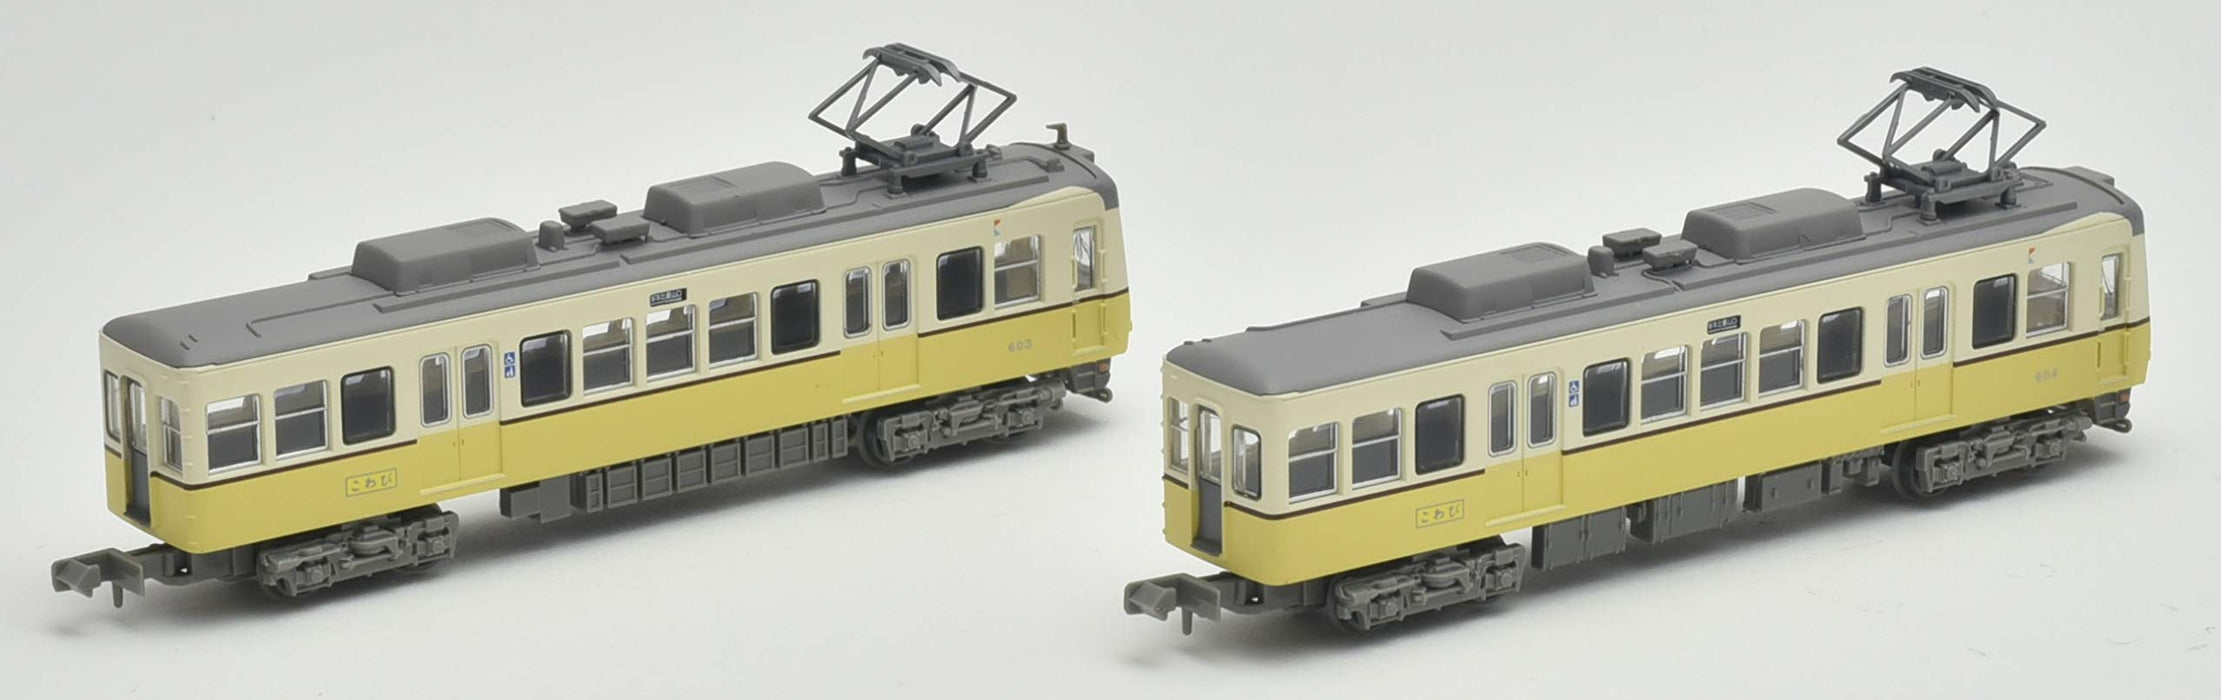 Tomytec Railway Collection Keihan Otsu Line Typ 600 2-Wagen-Set, Dioramazubehör, Erstausgabe